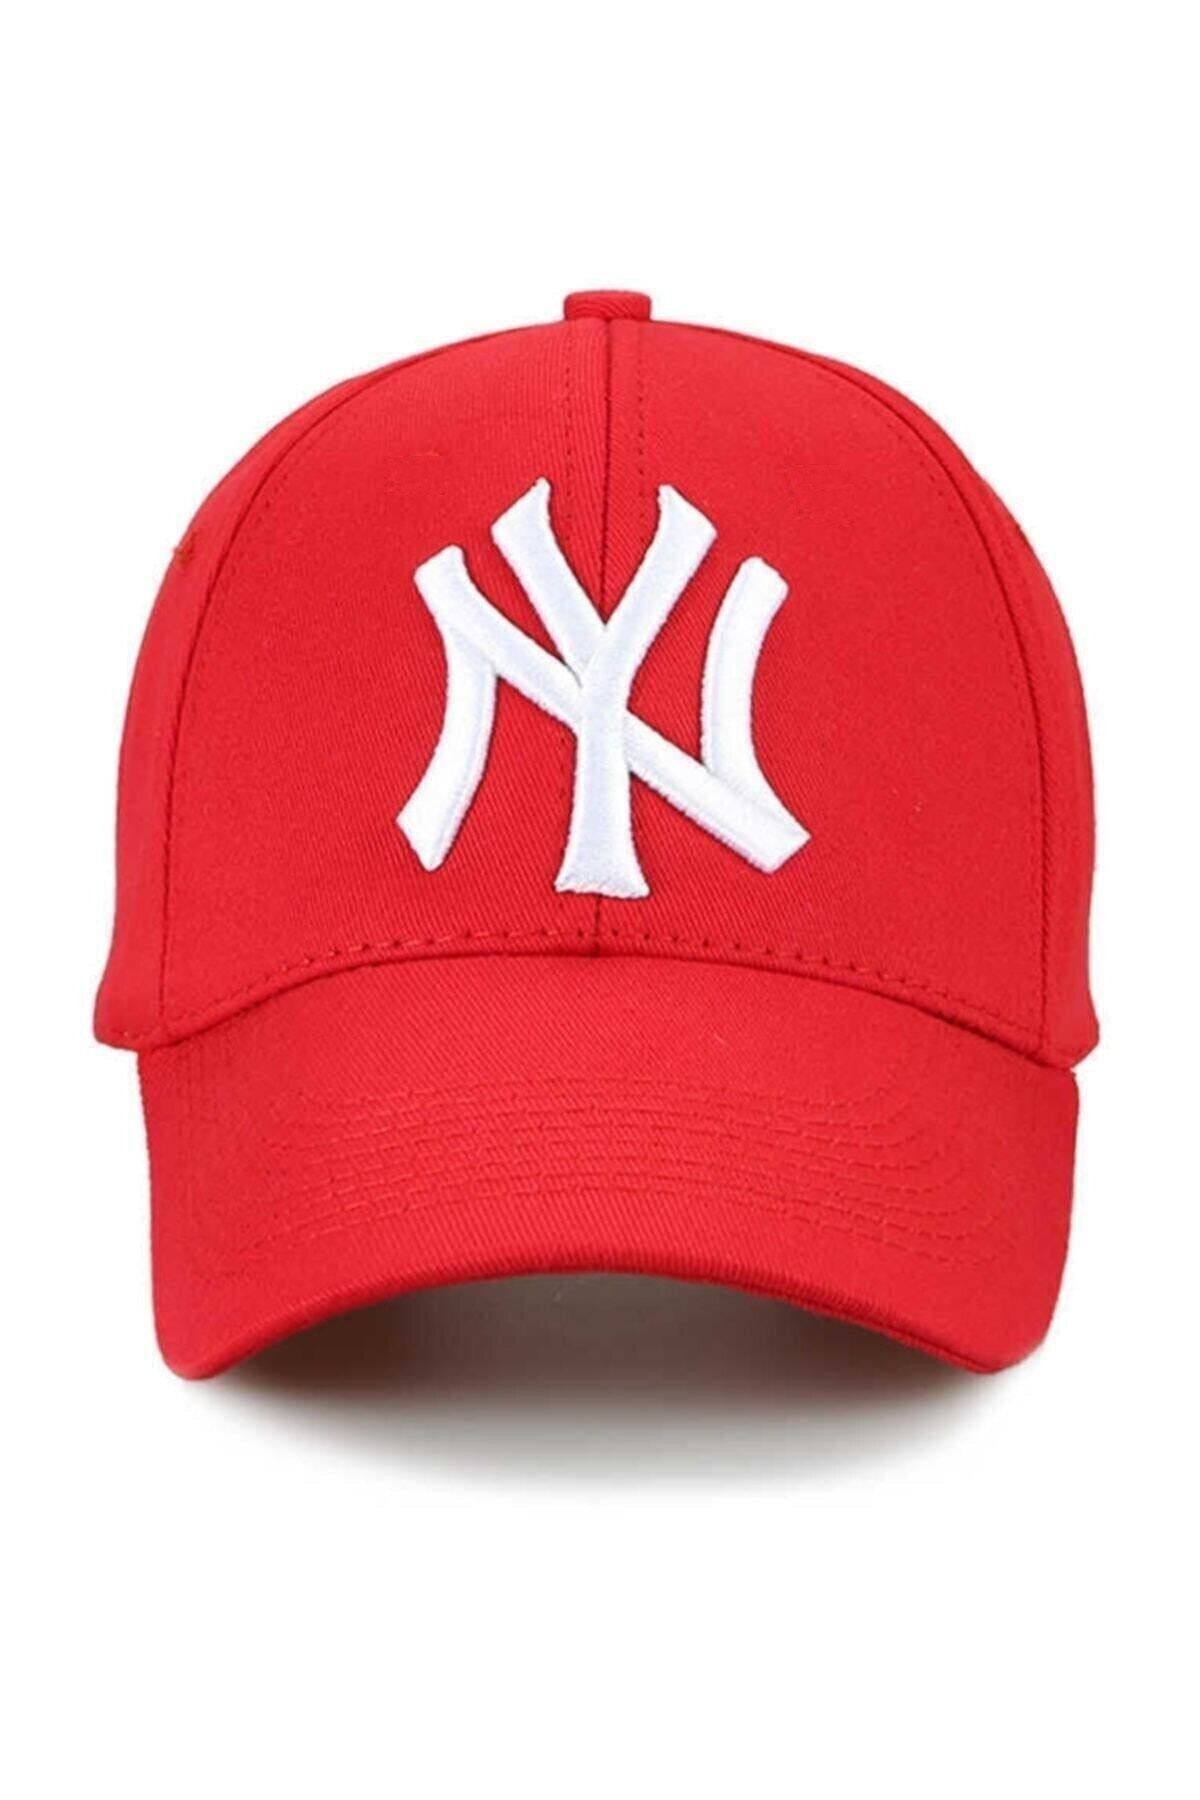 Nacar Unisex Kırmızı Şapka